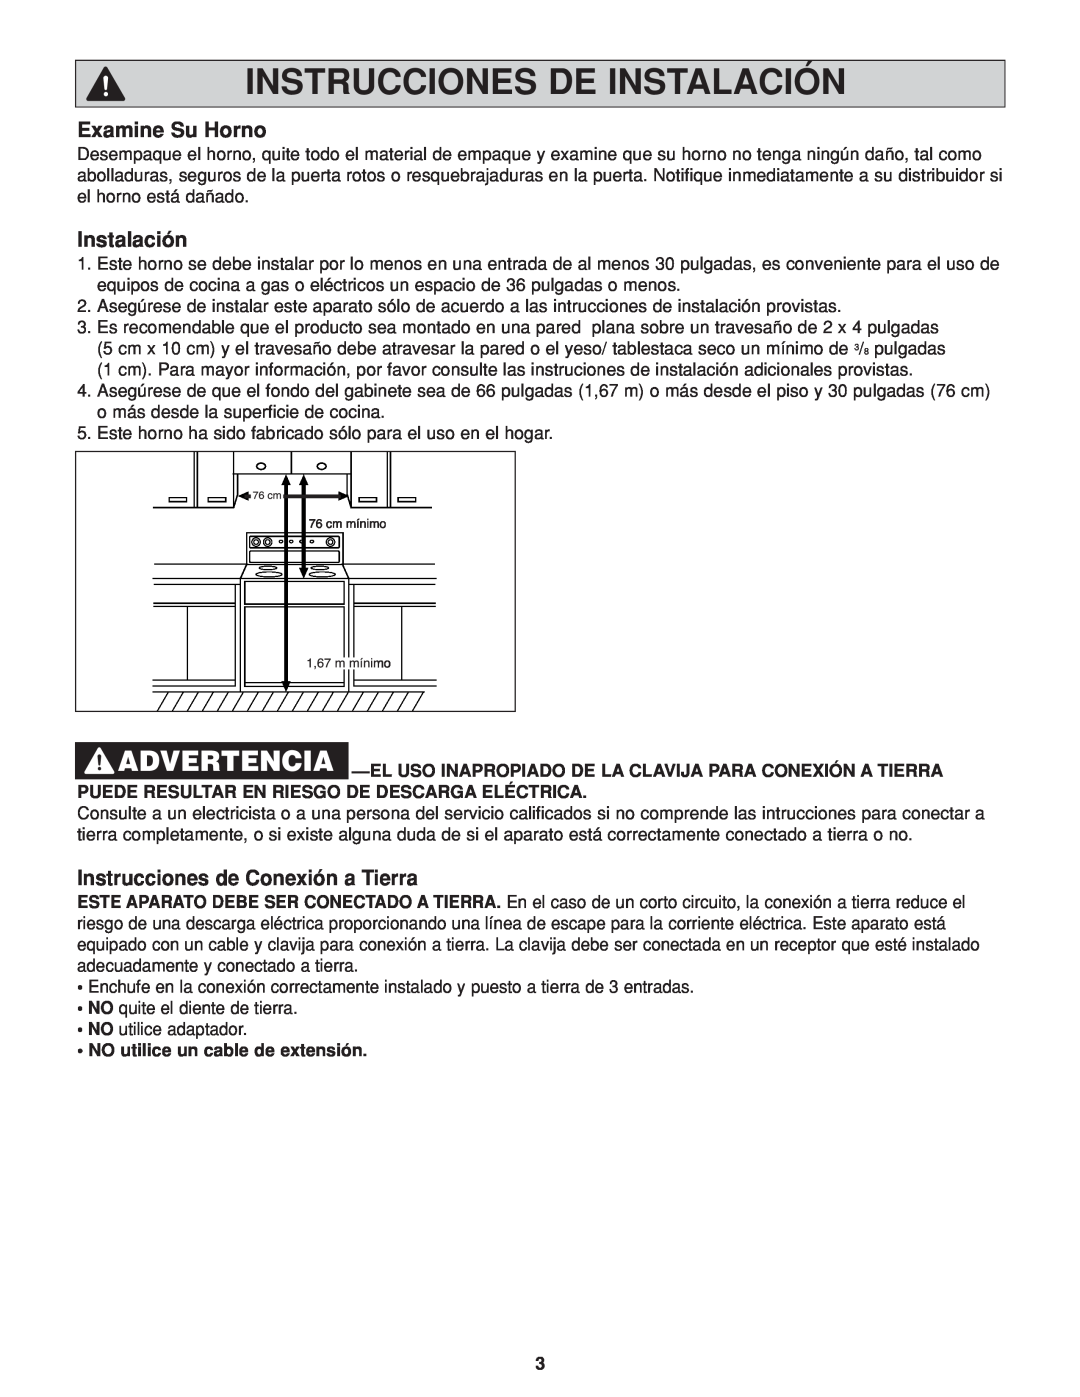 Panasonic NN-H264 Instrucciones De Instalación, Examine Su Horno, Instrucciones de Conexión a Tierra 